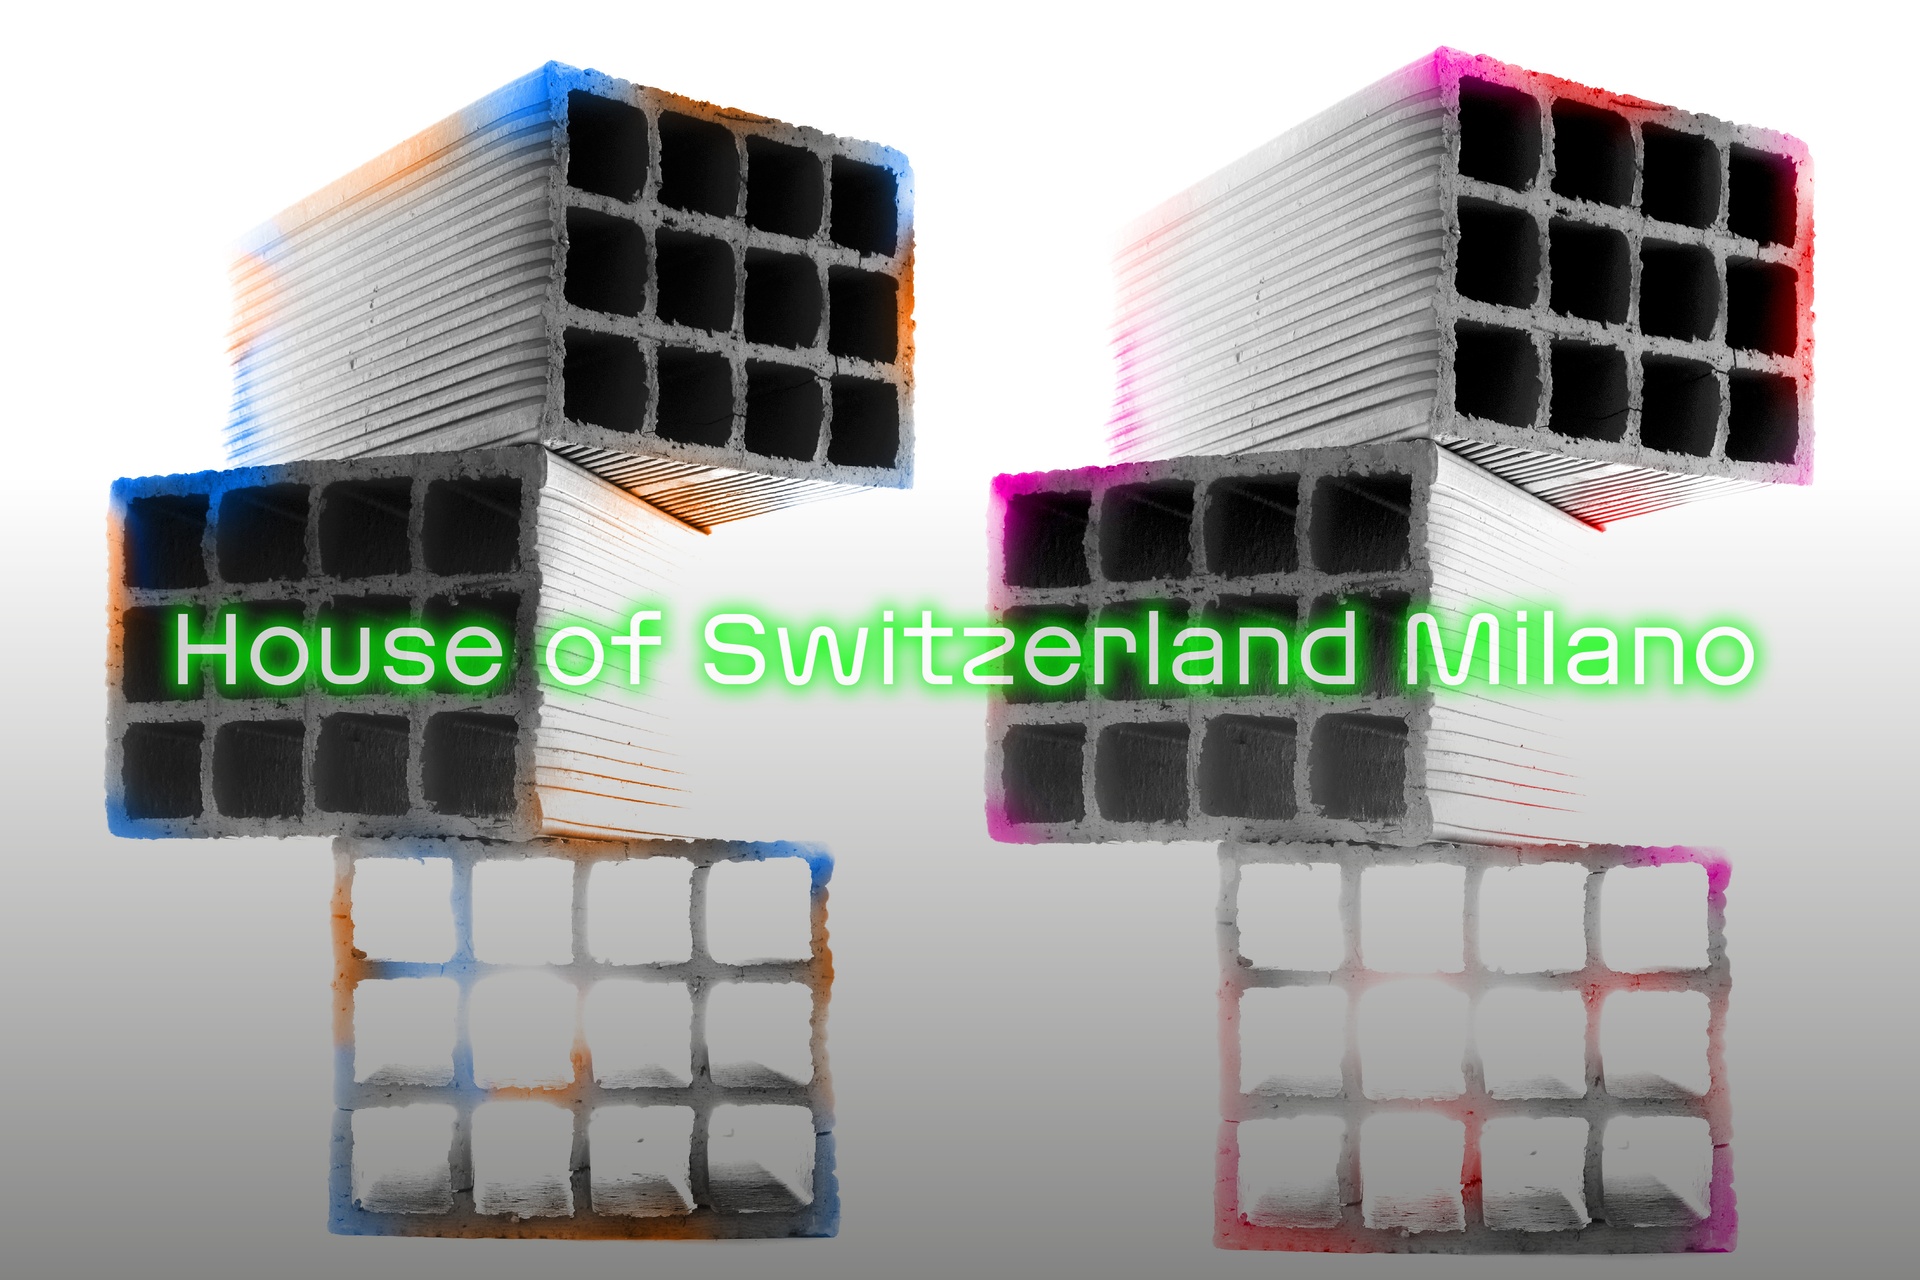 Милан дизайн жумалыгы: Presence Switzerland жана Pro Helvetia компанияларынын 17-жылдын 23-апрелинен 2023-апрелине чейин "Миландагы мода жумалыгына" катышуусунун негизги визуалдык көрүнүшү